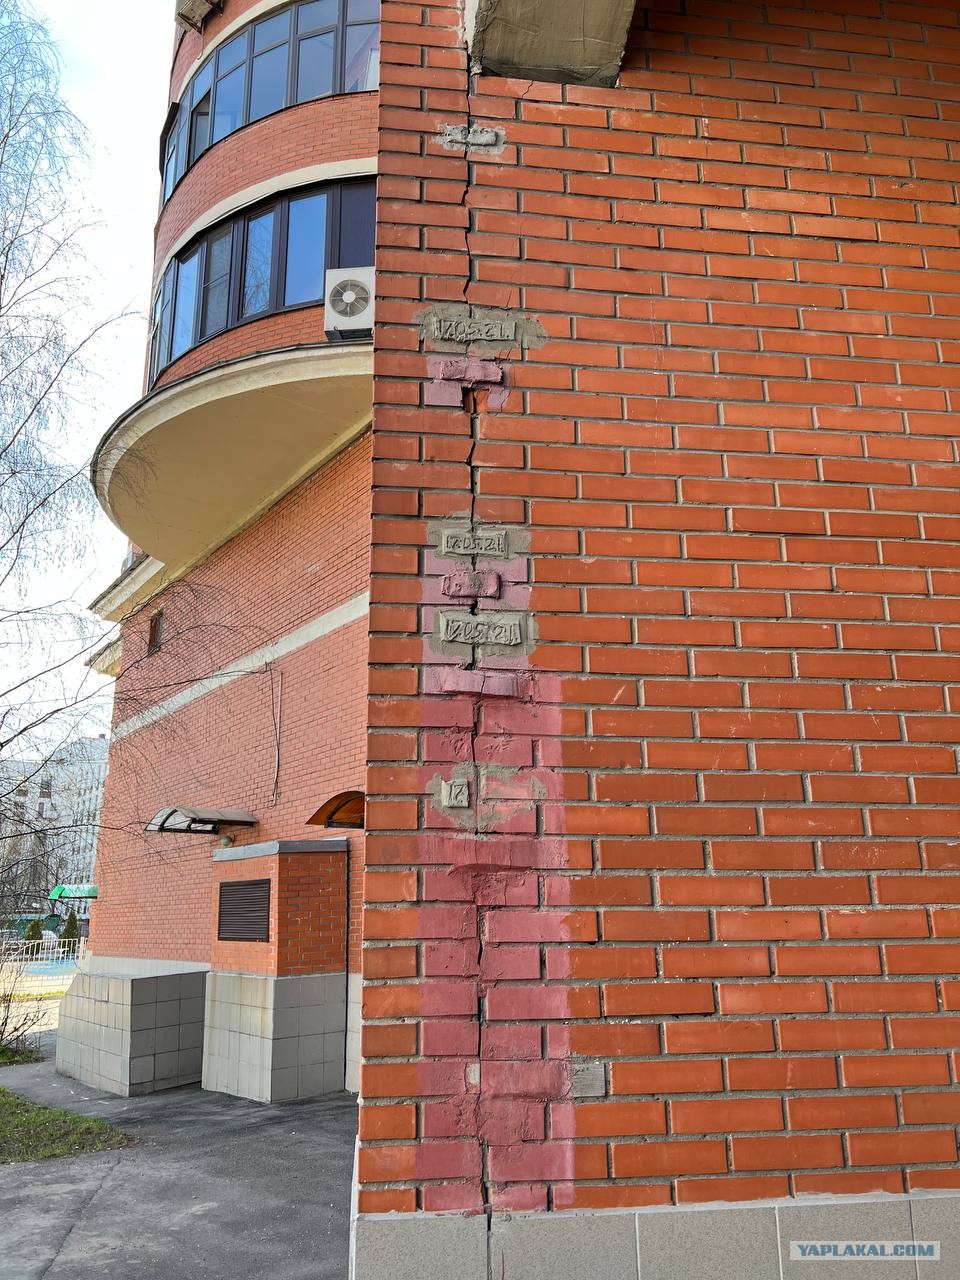 Трещин москва. Многоэтажный дом. Многоэтажный дом в Москве. Этажный дом. Стяжка дома от трещин.